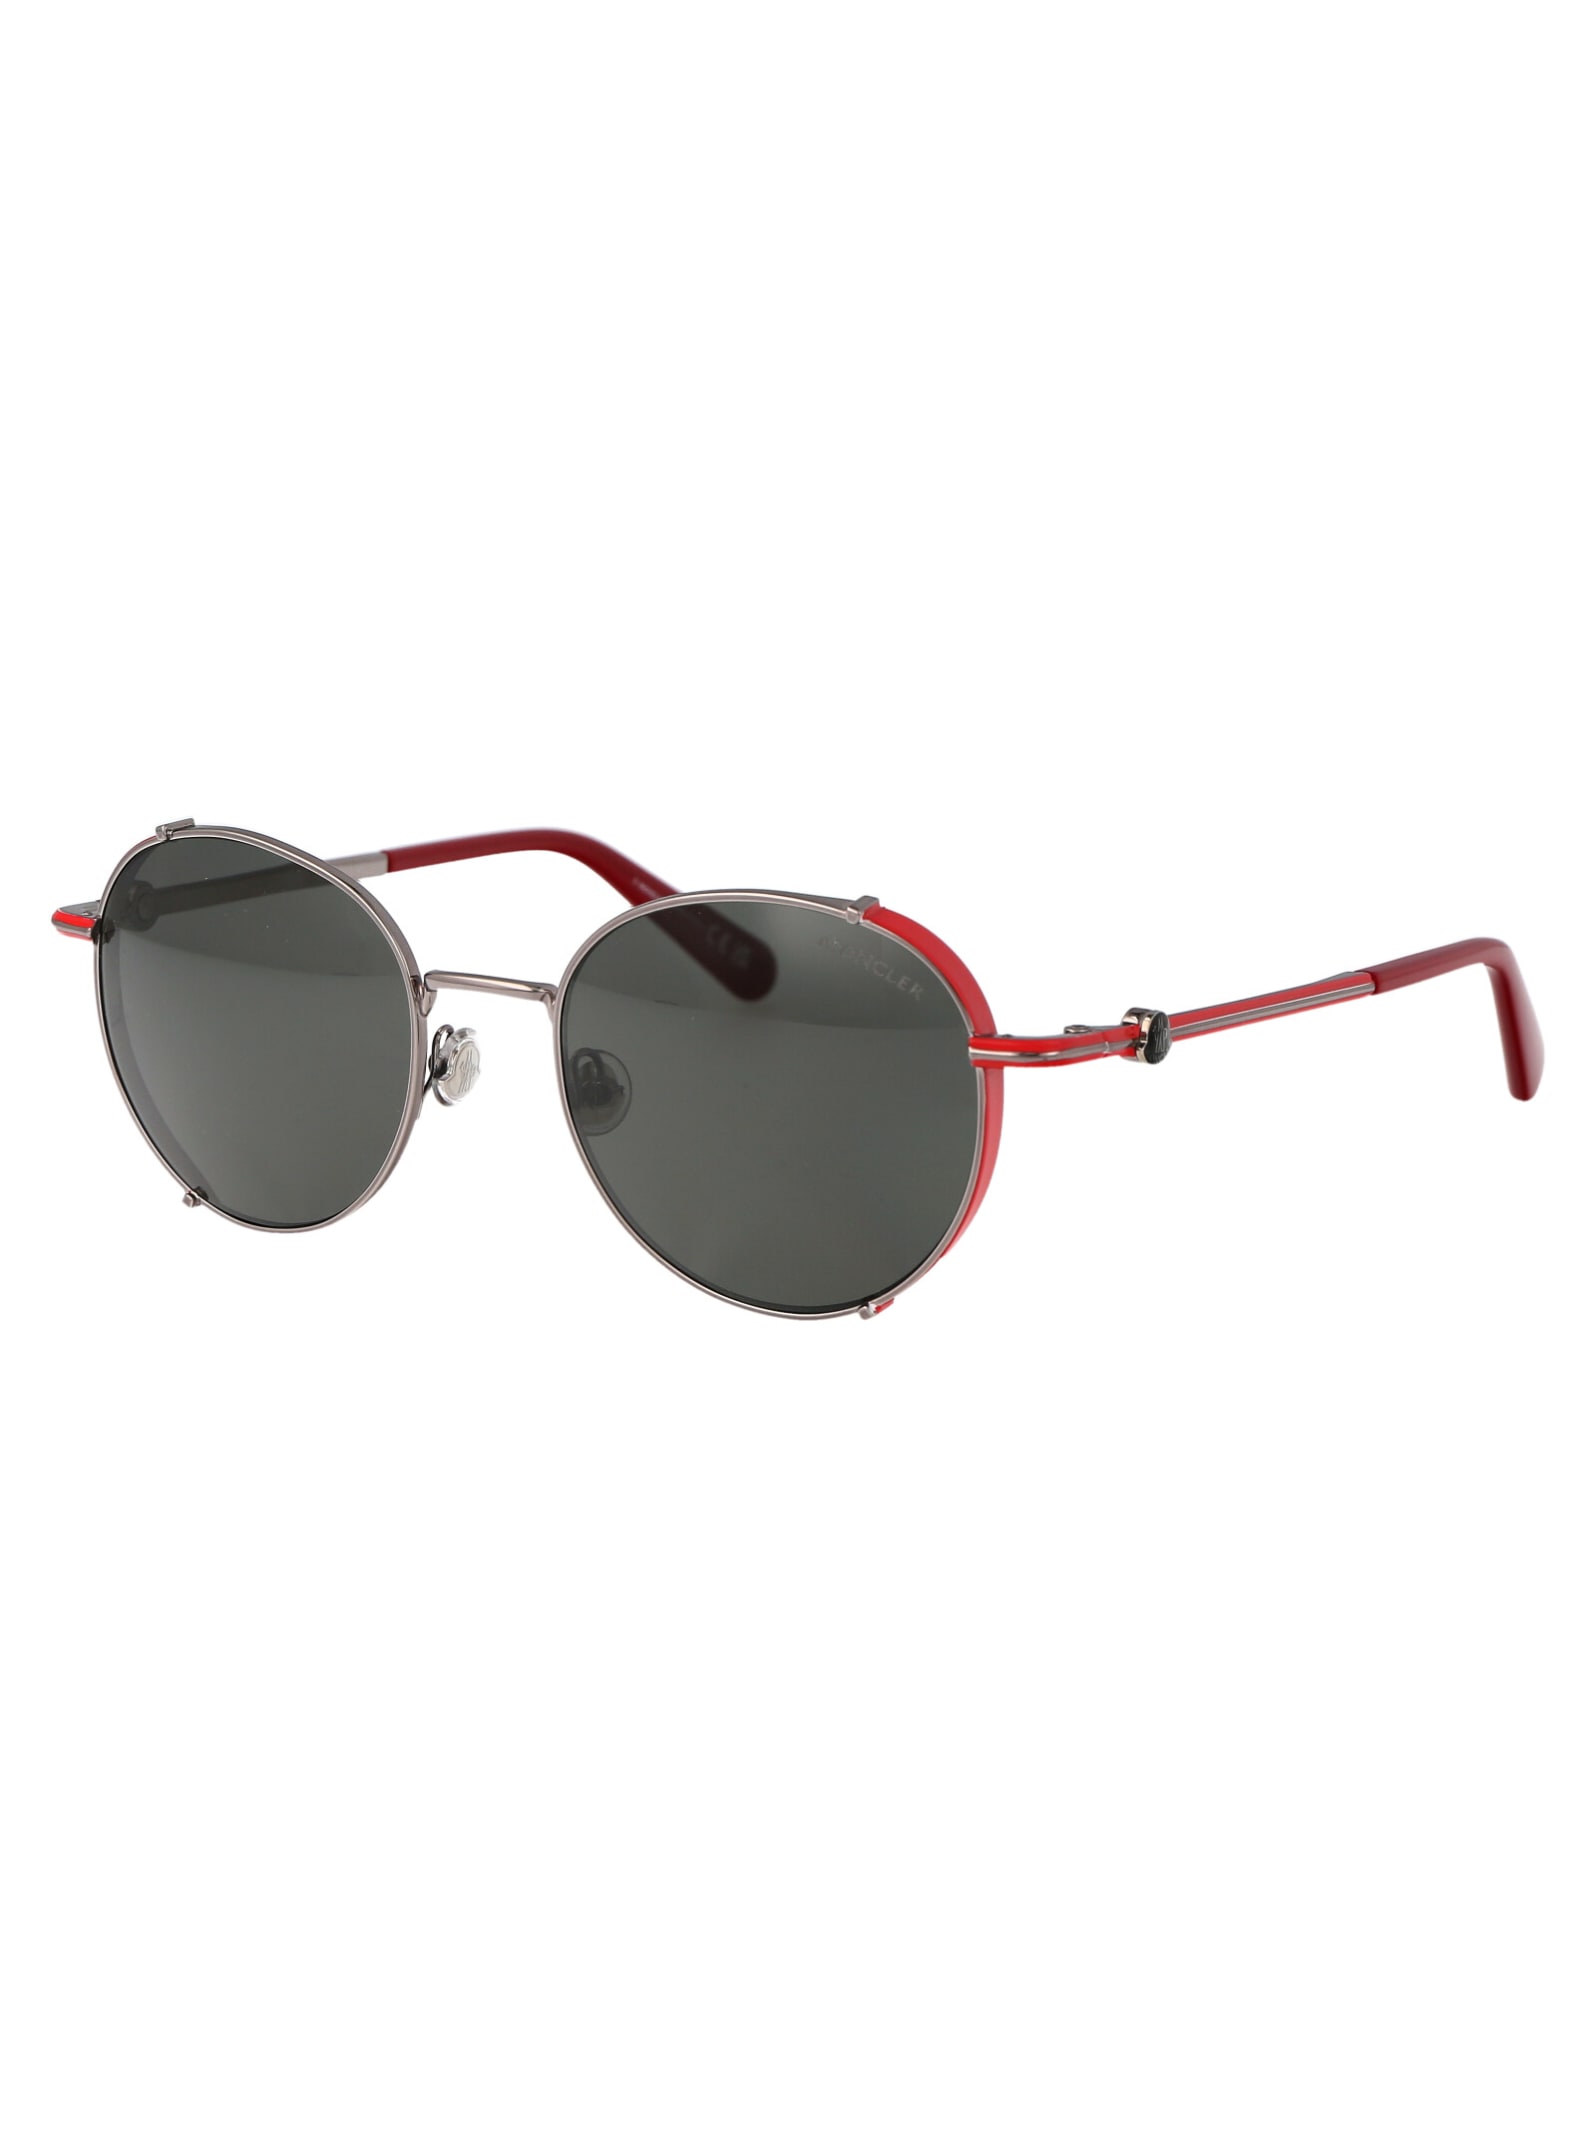 Shop Moncler Ml0286 Sunglasses In 14 Rutenio Chiaro Lucido